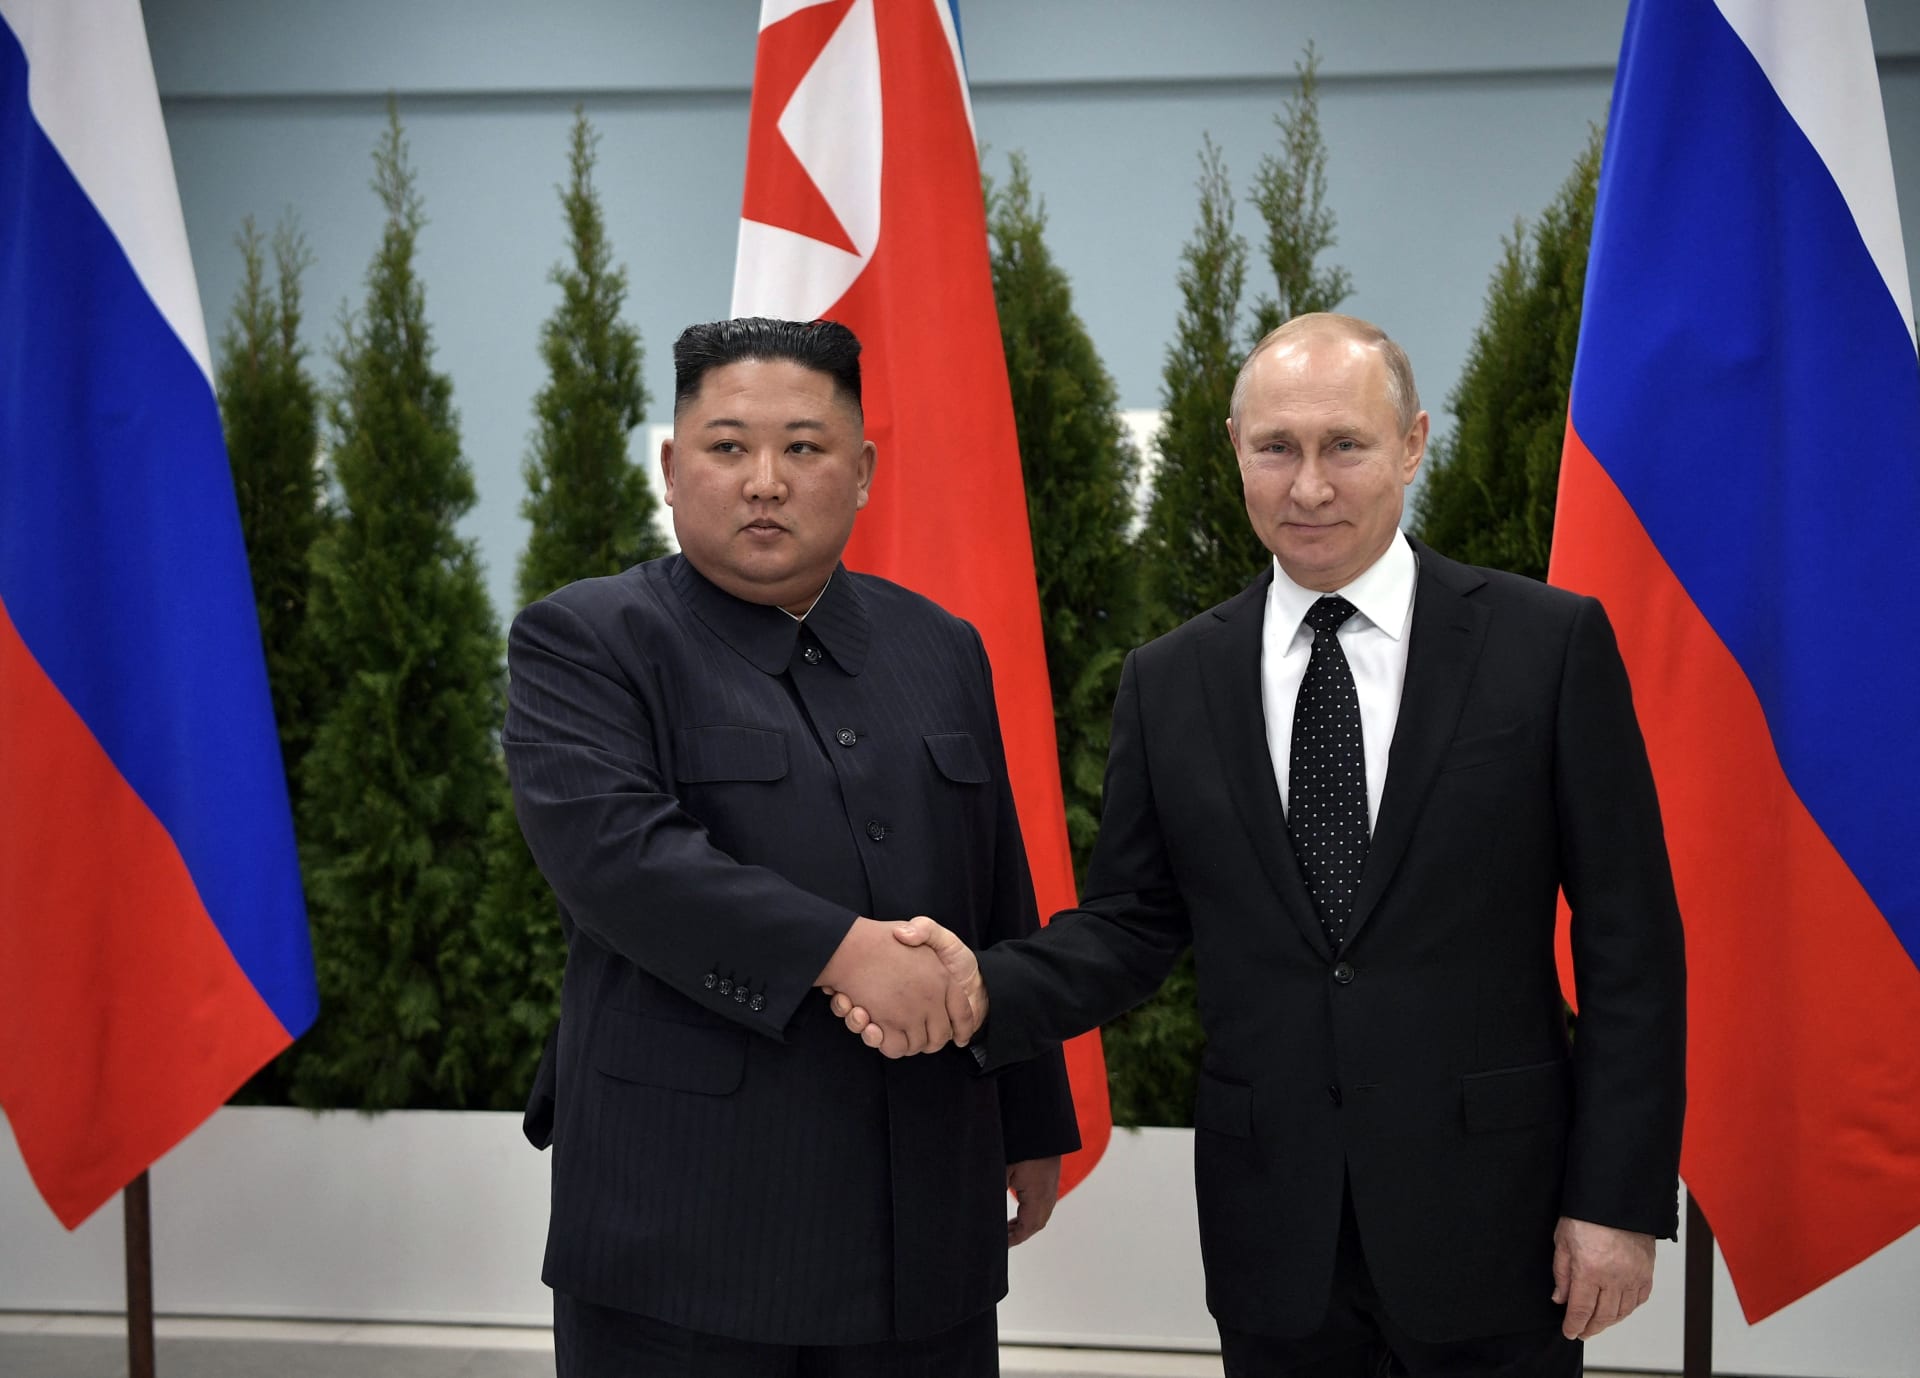 صورة أرشيفية للقاء سابق بين الرئيس الروسي فلاديمير بوتين والزعيم الكوري الشمالي كيم جونغ أون